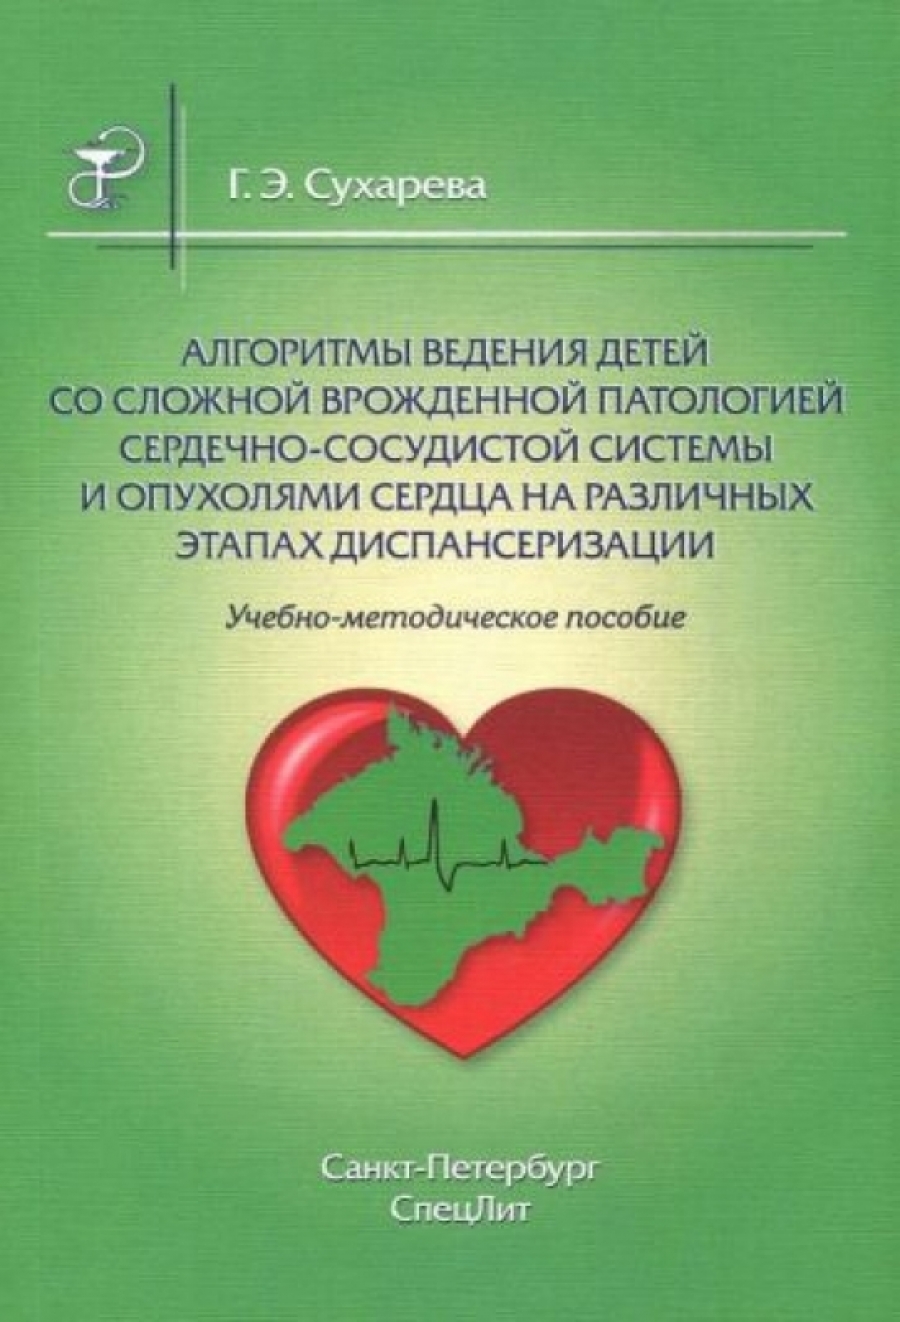 Сухарева Г.Э. Алгоритмы ведения детей со сложной врожденной патологией сердечно-сосудистой системы и опухолями сердца на различных этапах диспансеризации 